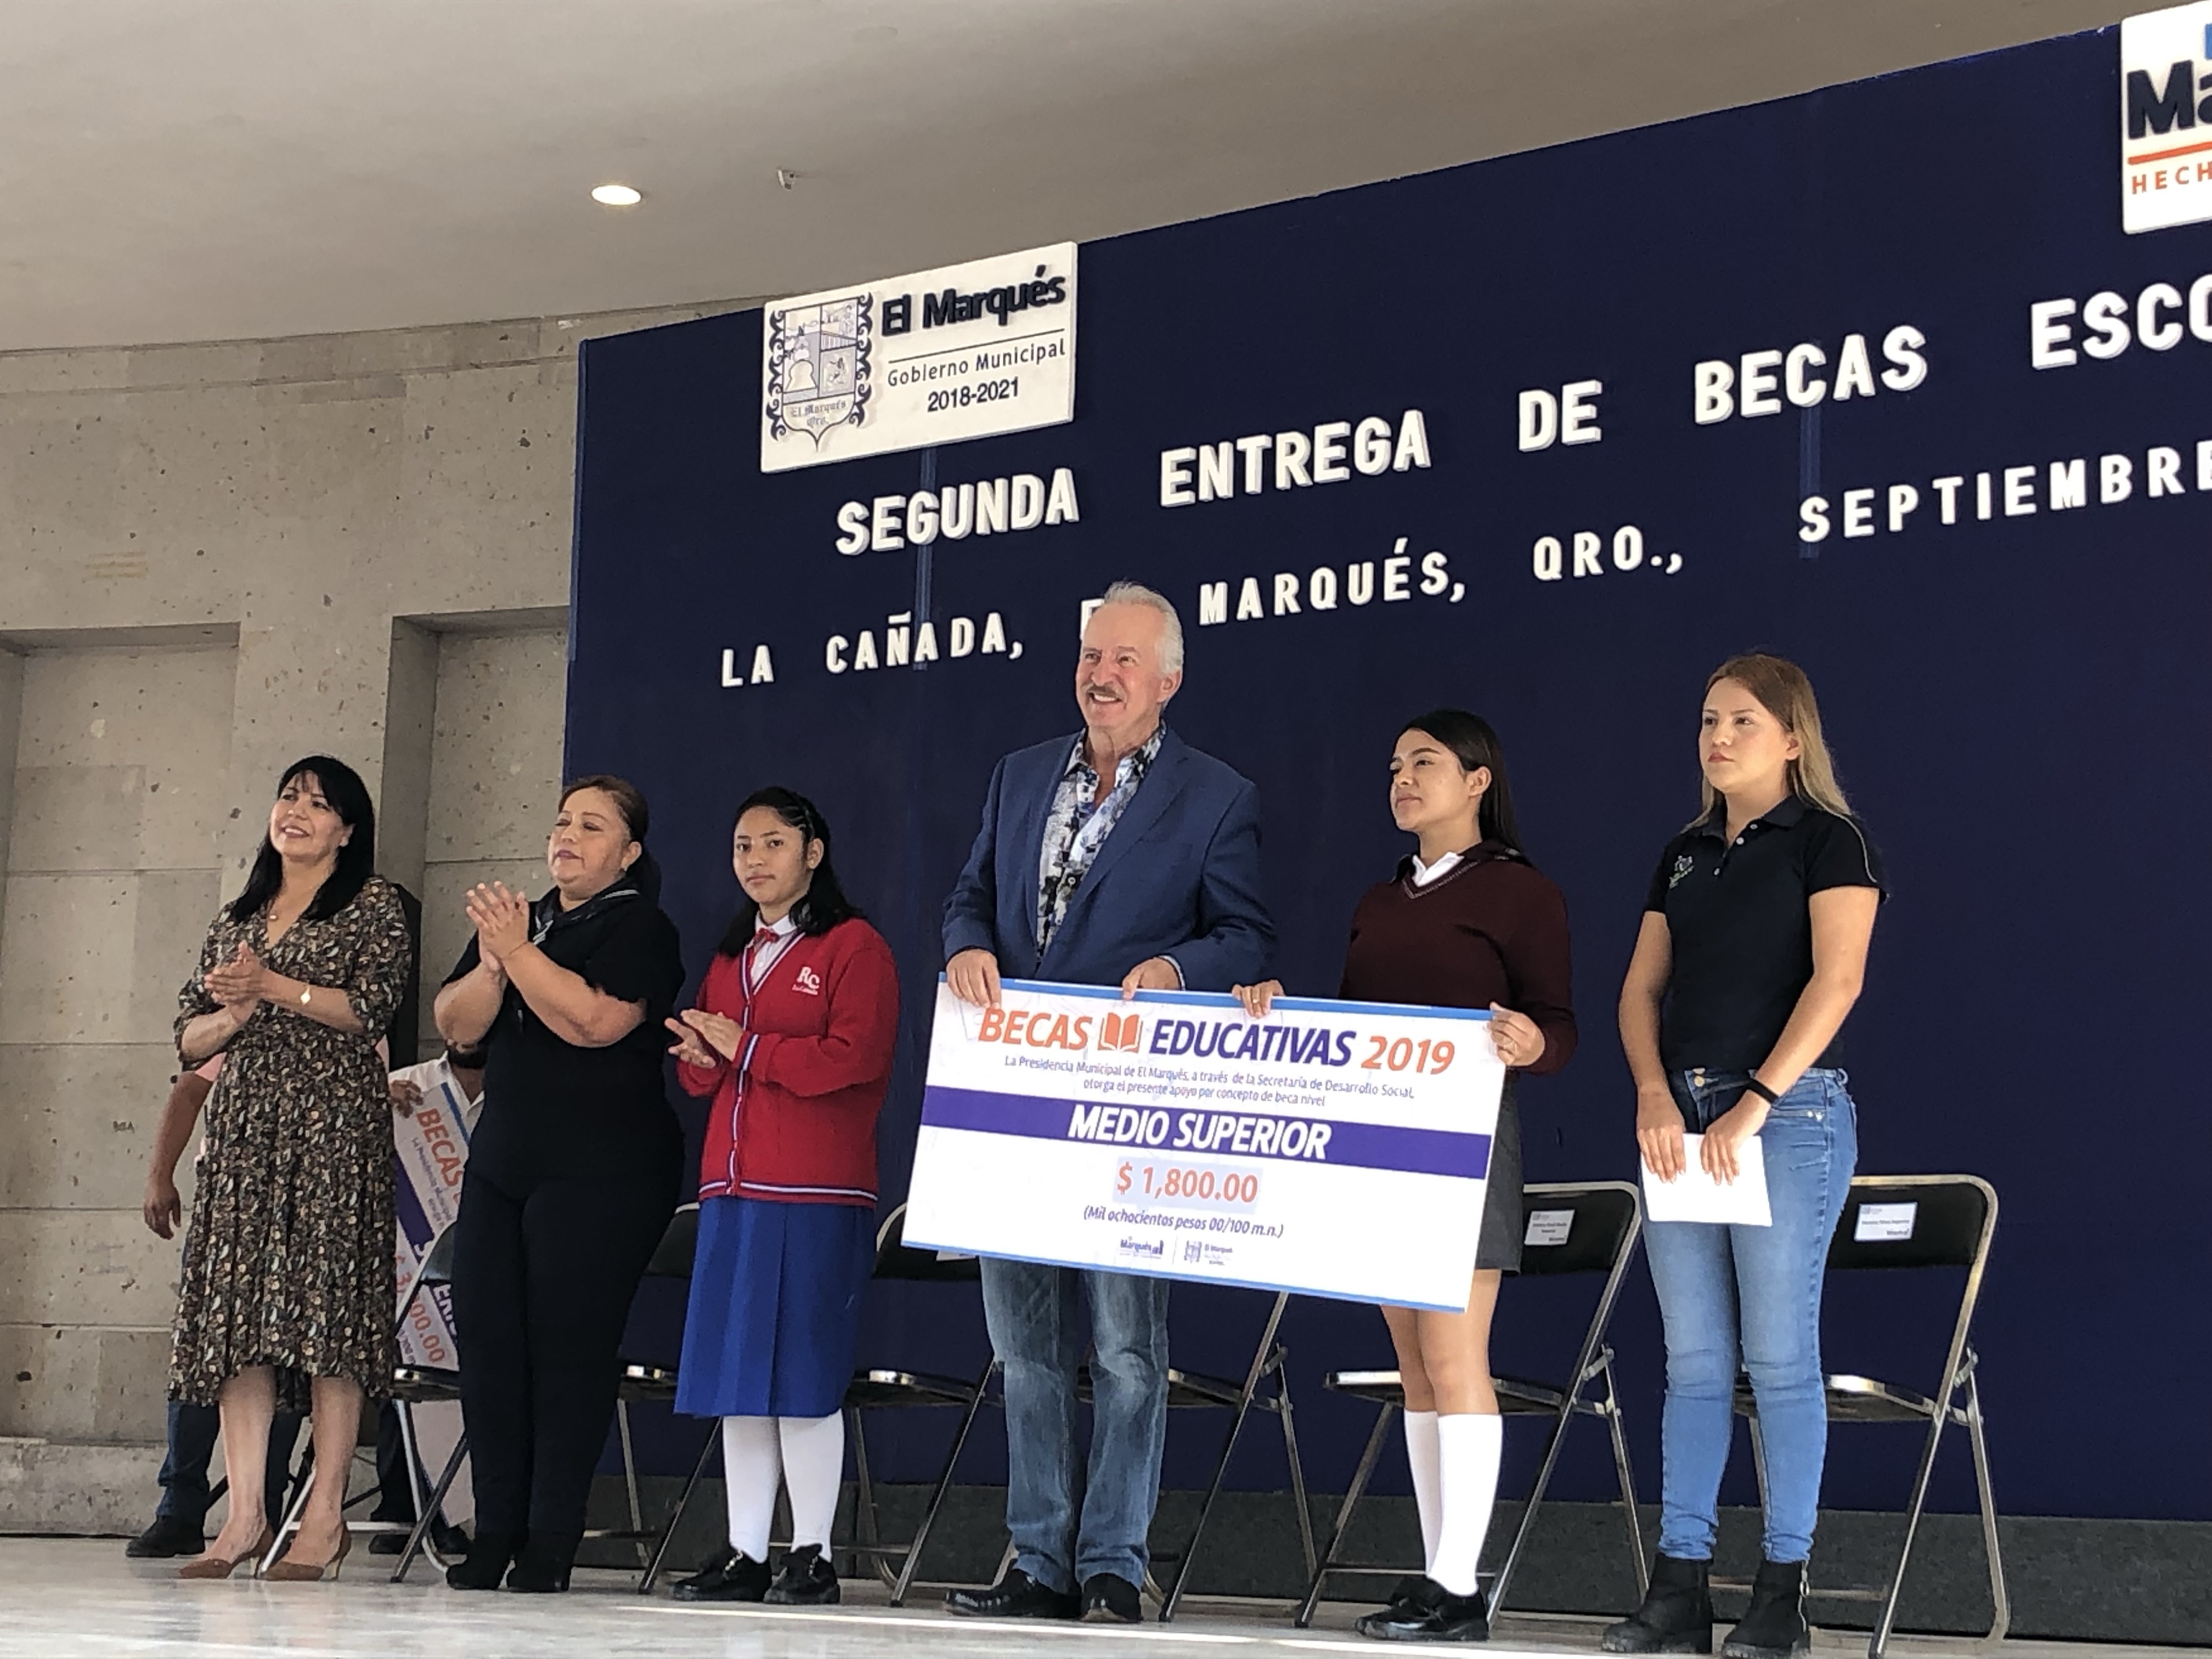  Entrega Vega Carriles 1 millón 500 mil pesos en becas escolares